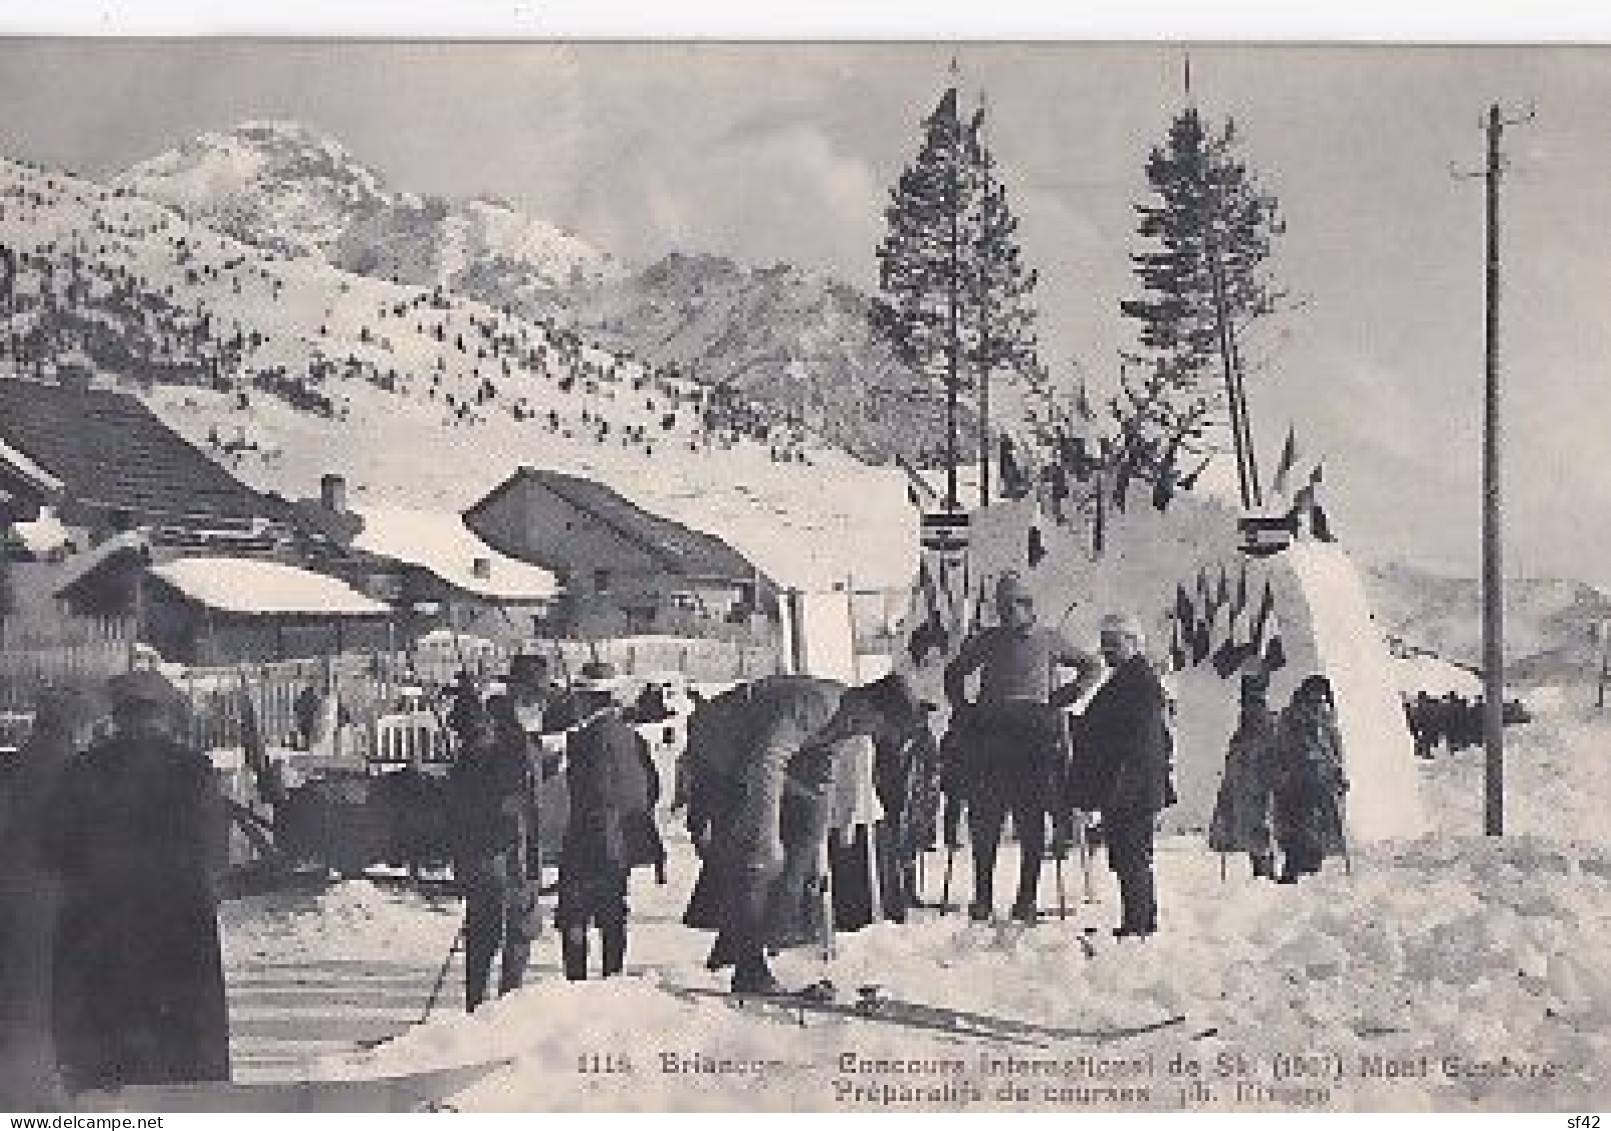 BRIANCON              CONCOURS INTERNATIONAL DE SKI  1907.  MONT GENEVRE          PREPARATIFS DE COURSES - Deportes De Invierno